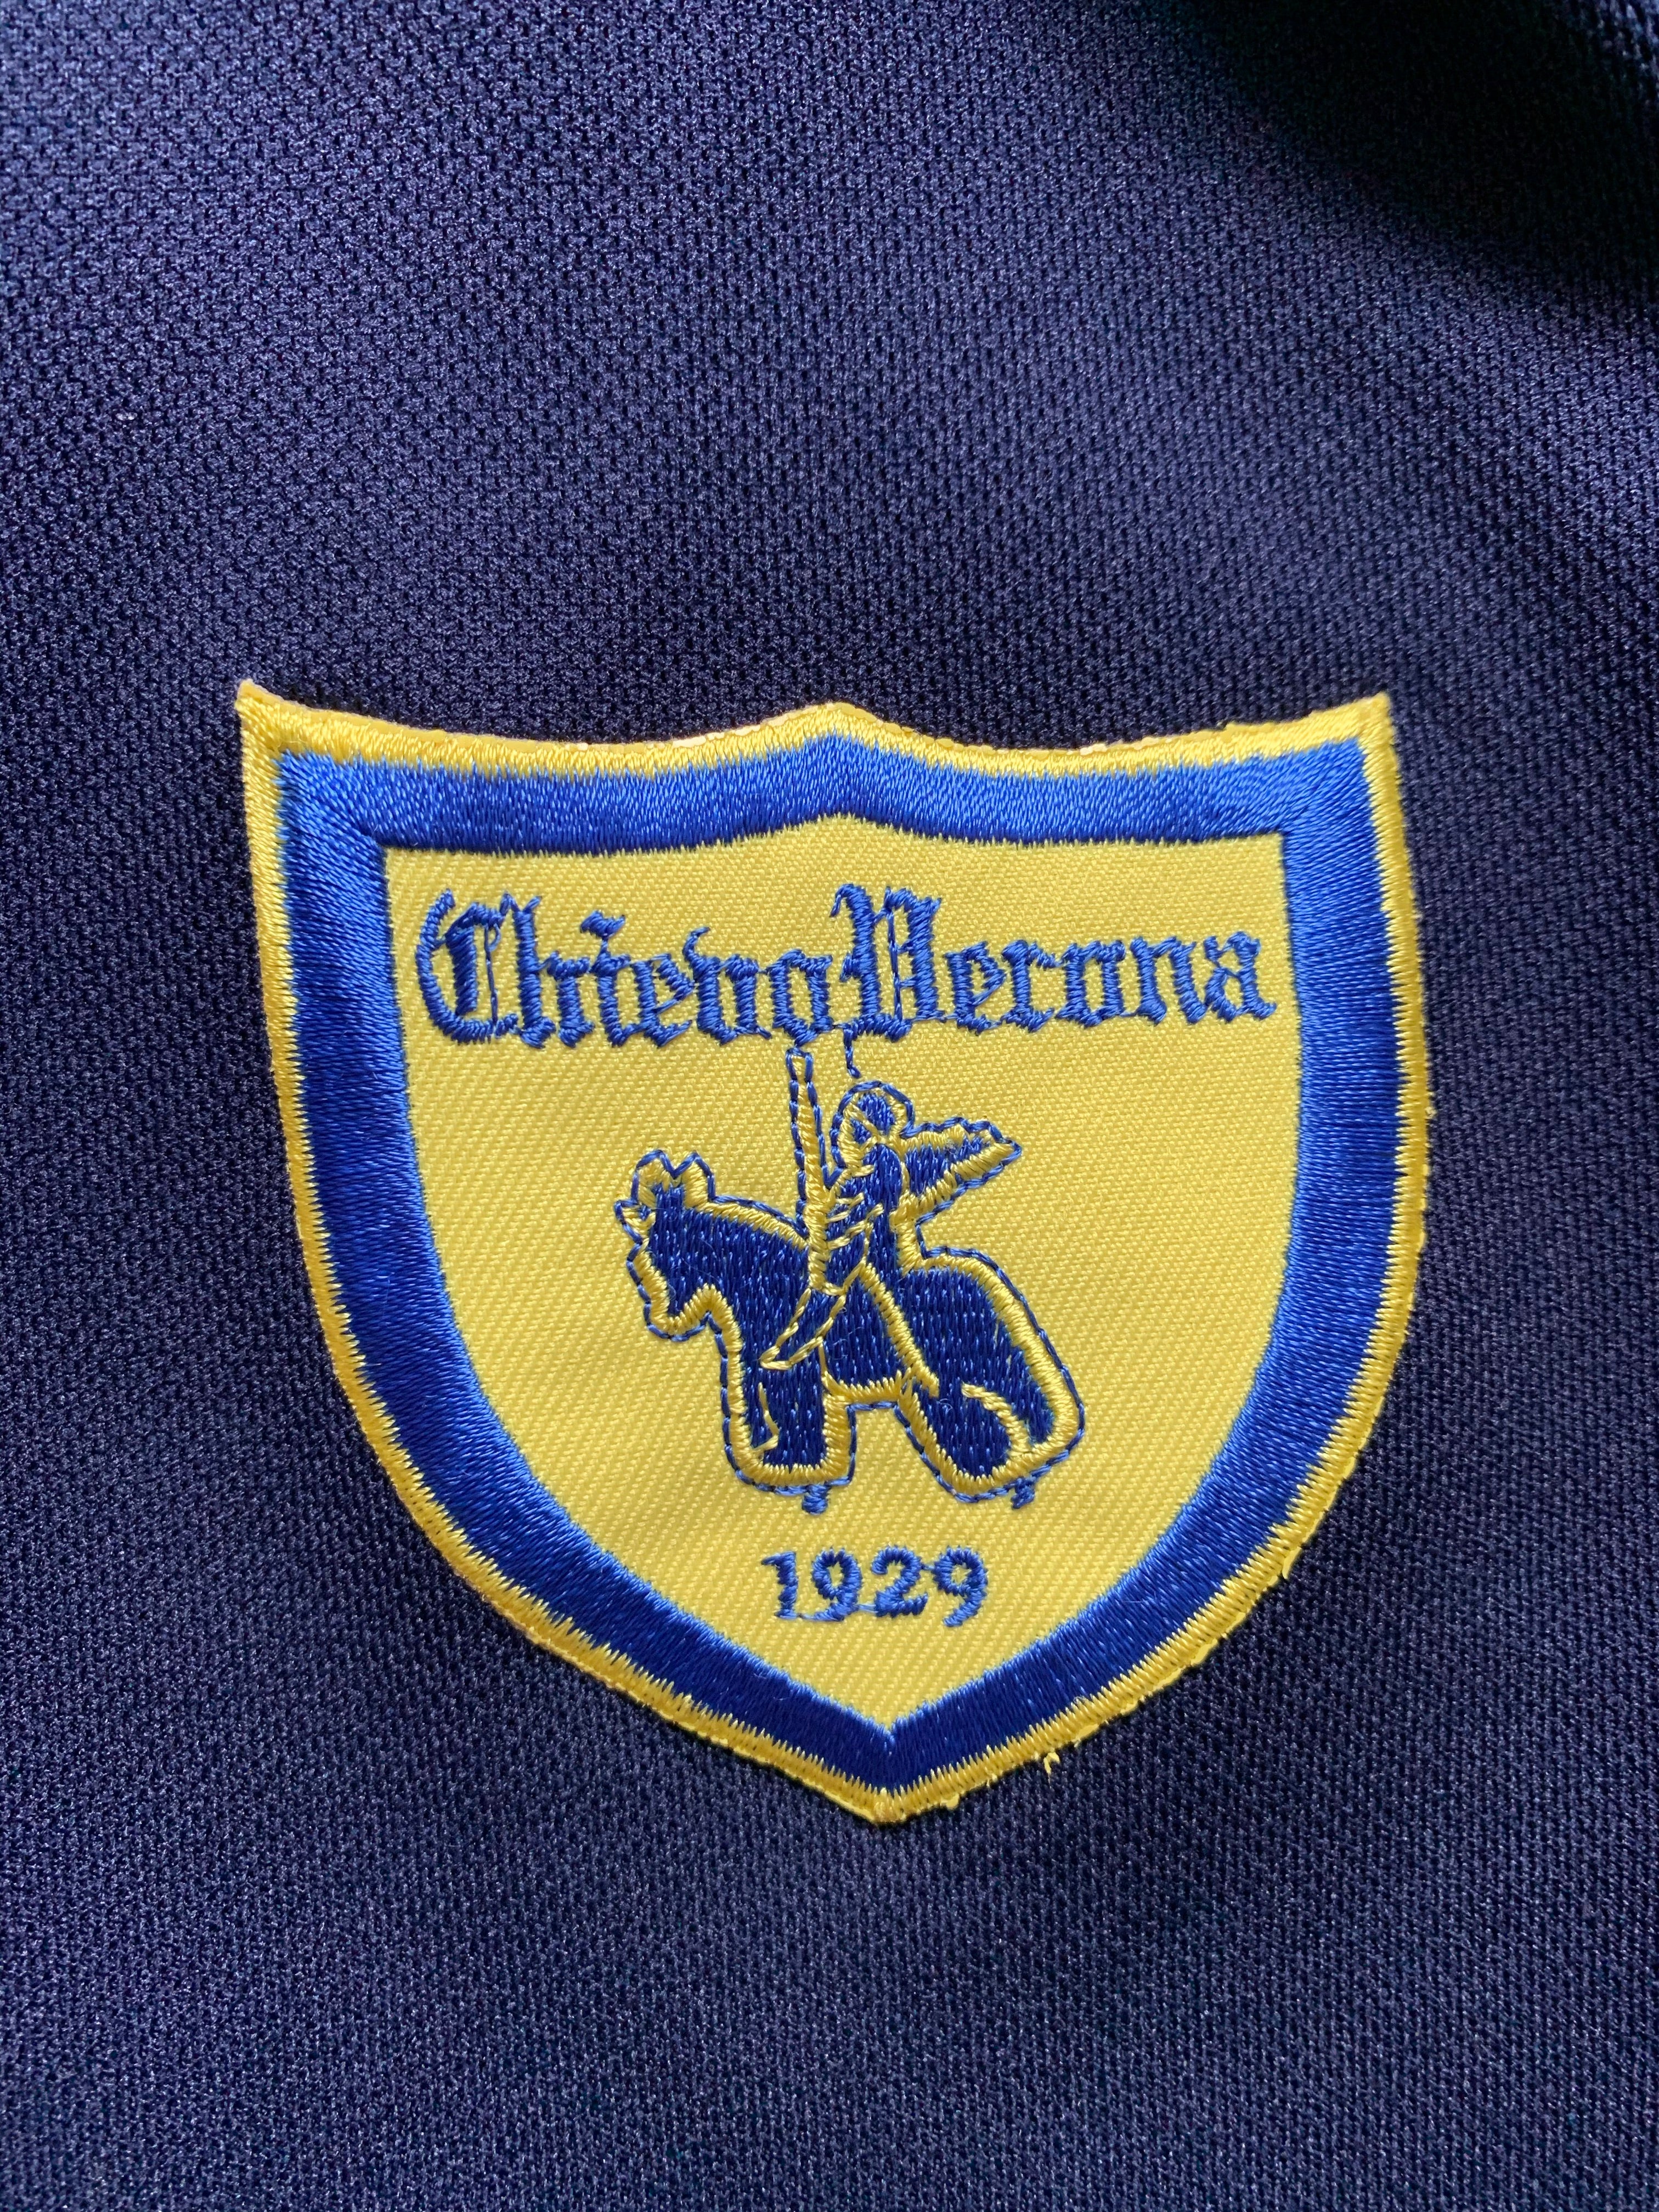 2002/03 Chievo Verona Training Shirt (XL) 9/10